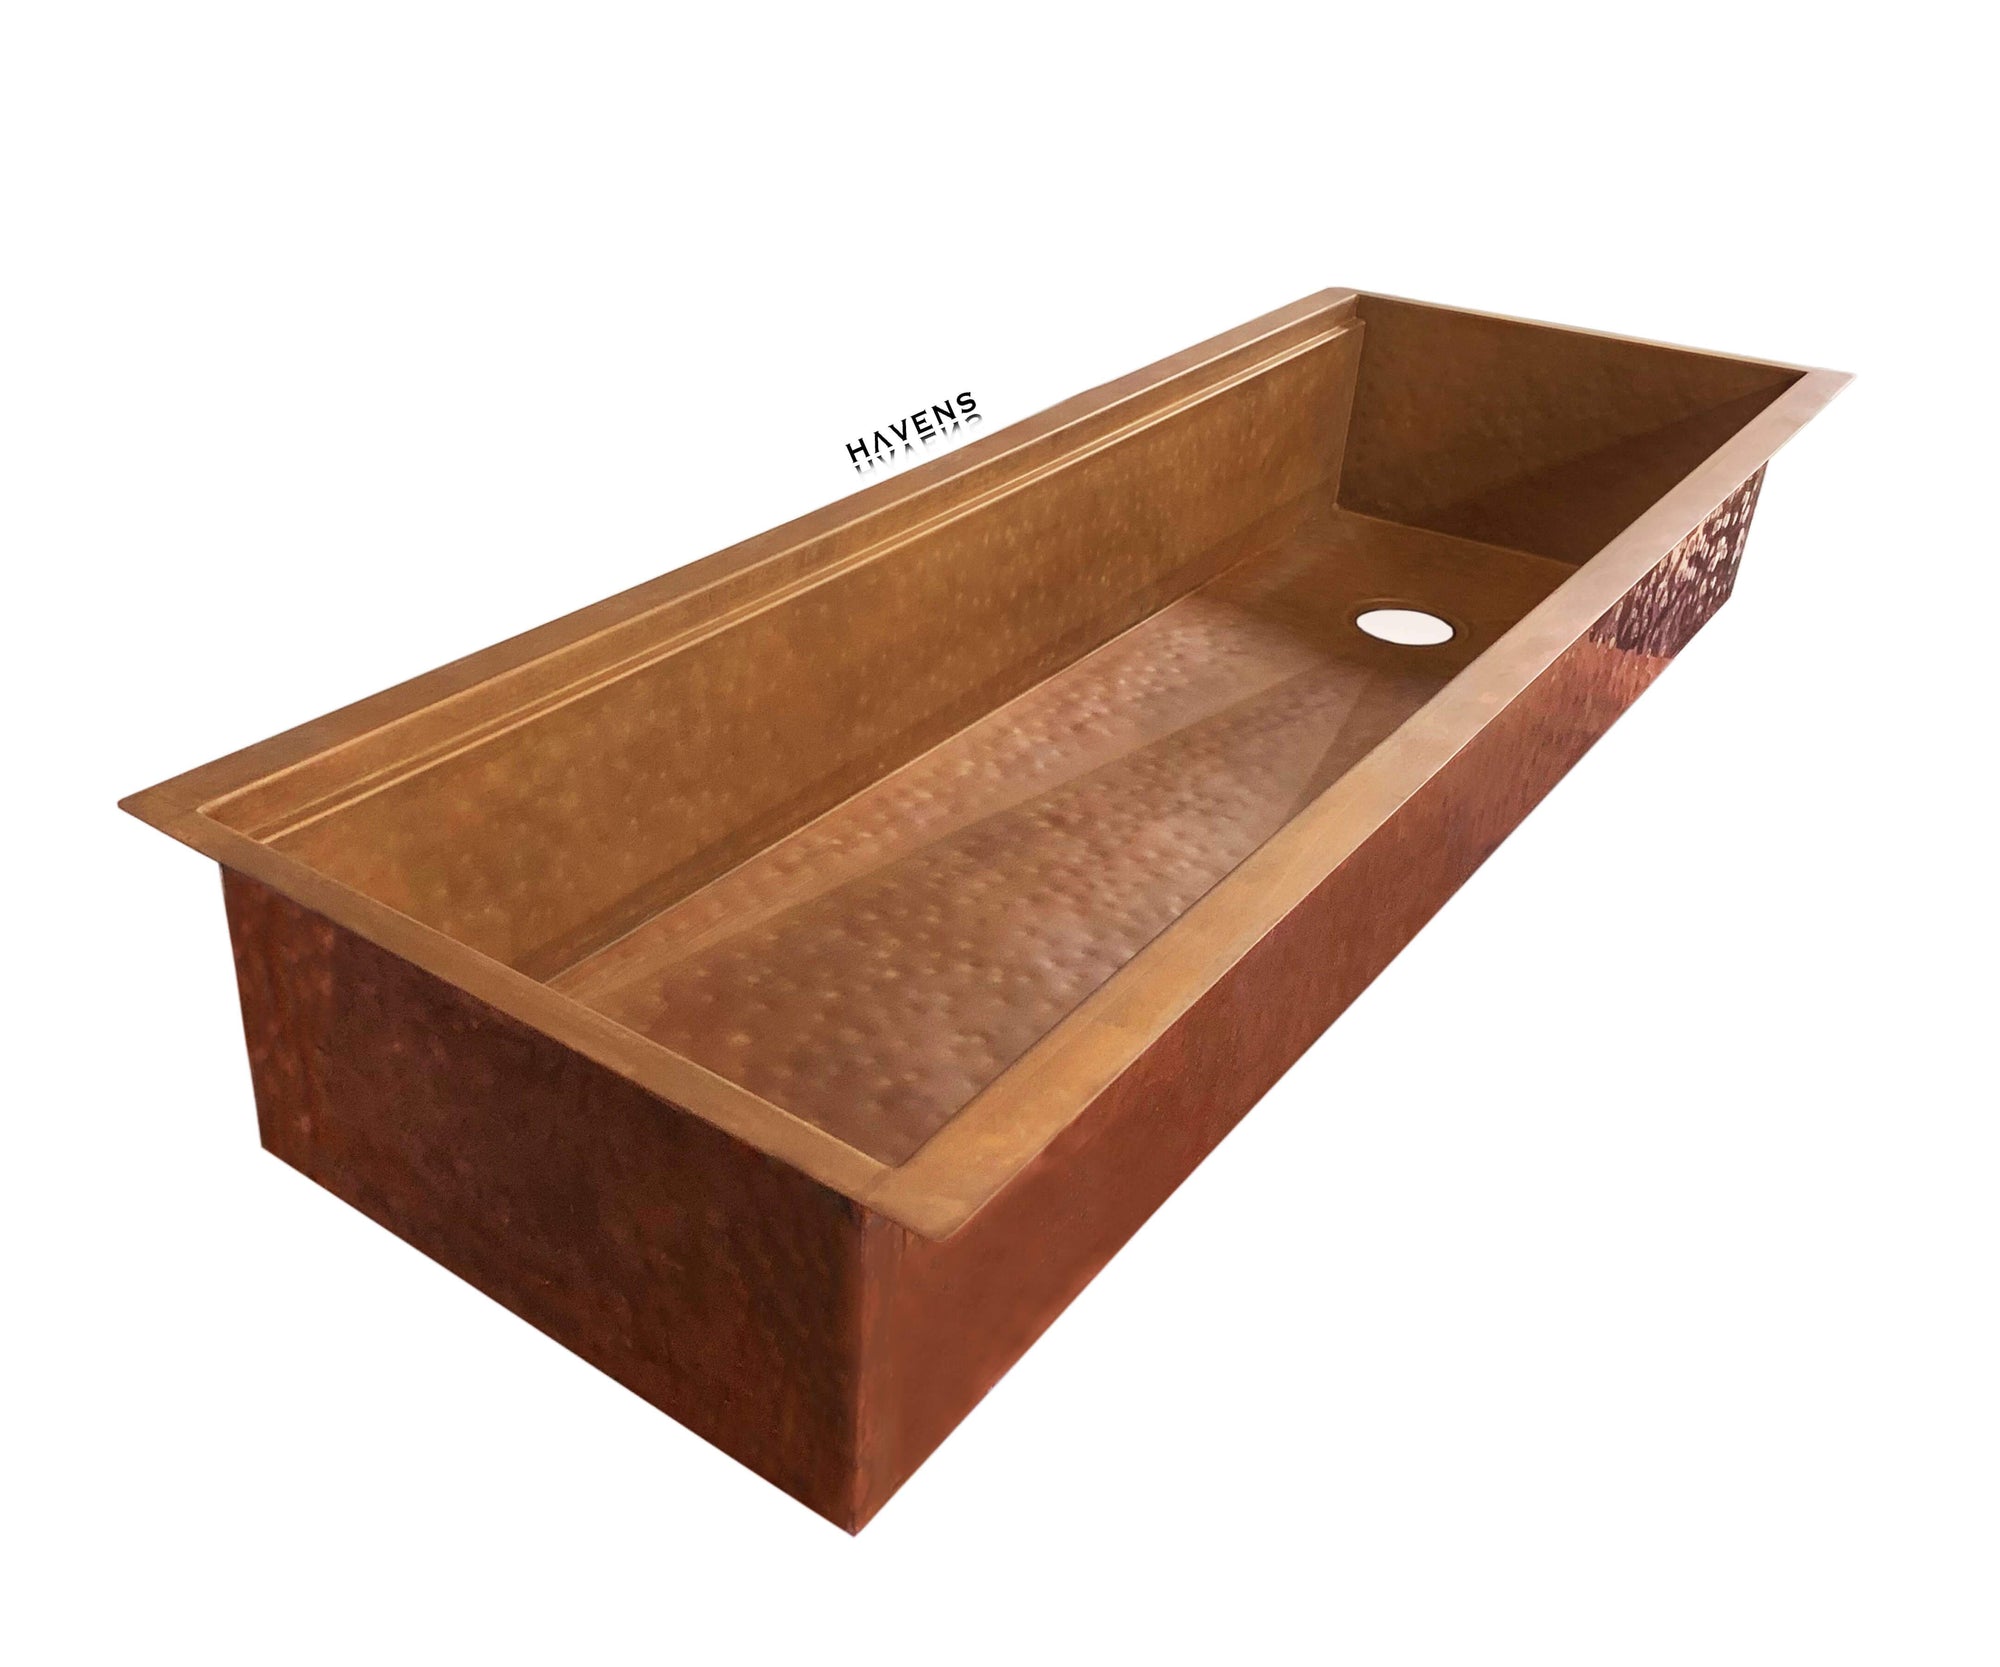 Custom Trough Sink - Pure Copper